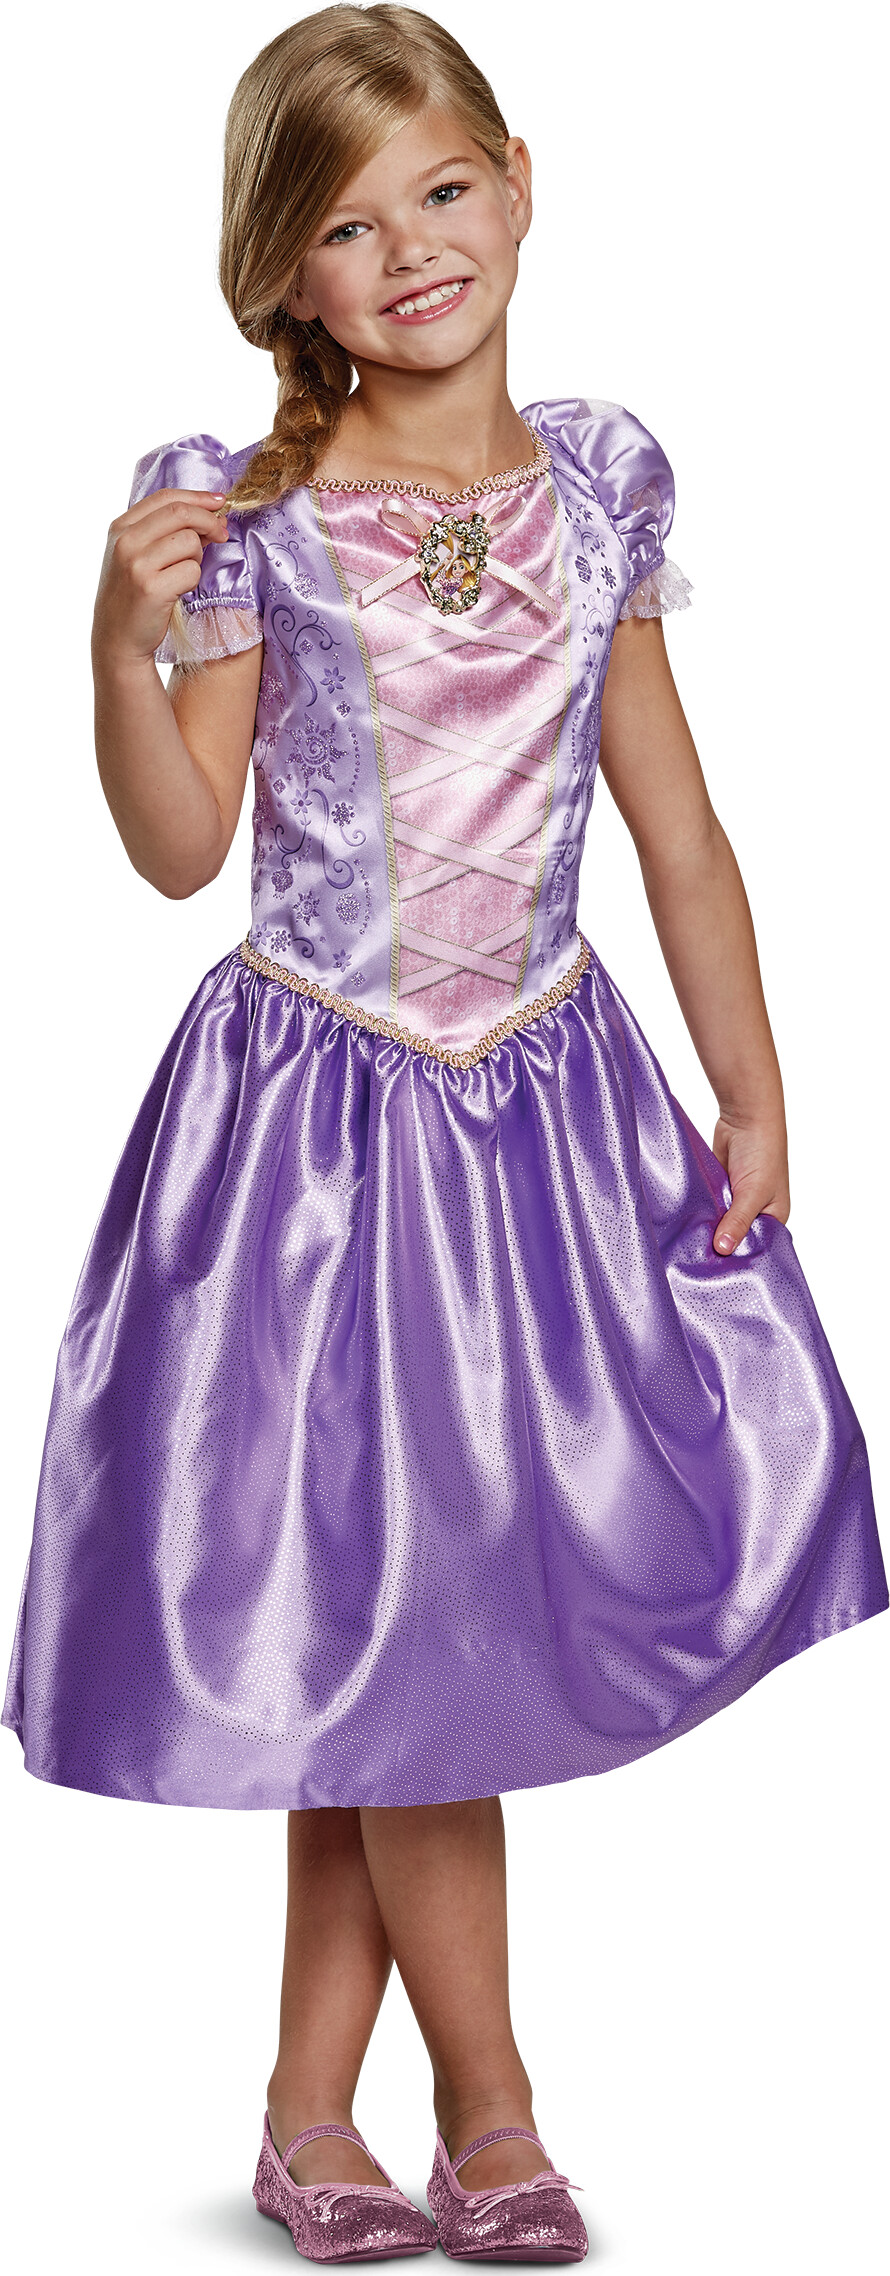 Billede af Rapunzel Kostume Til Børn - 104 Cm - Disney Princess